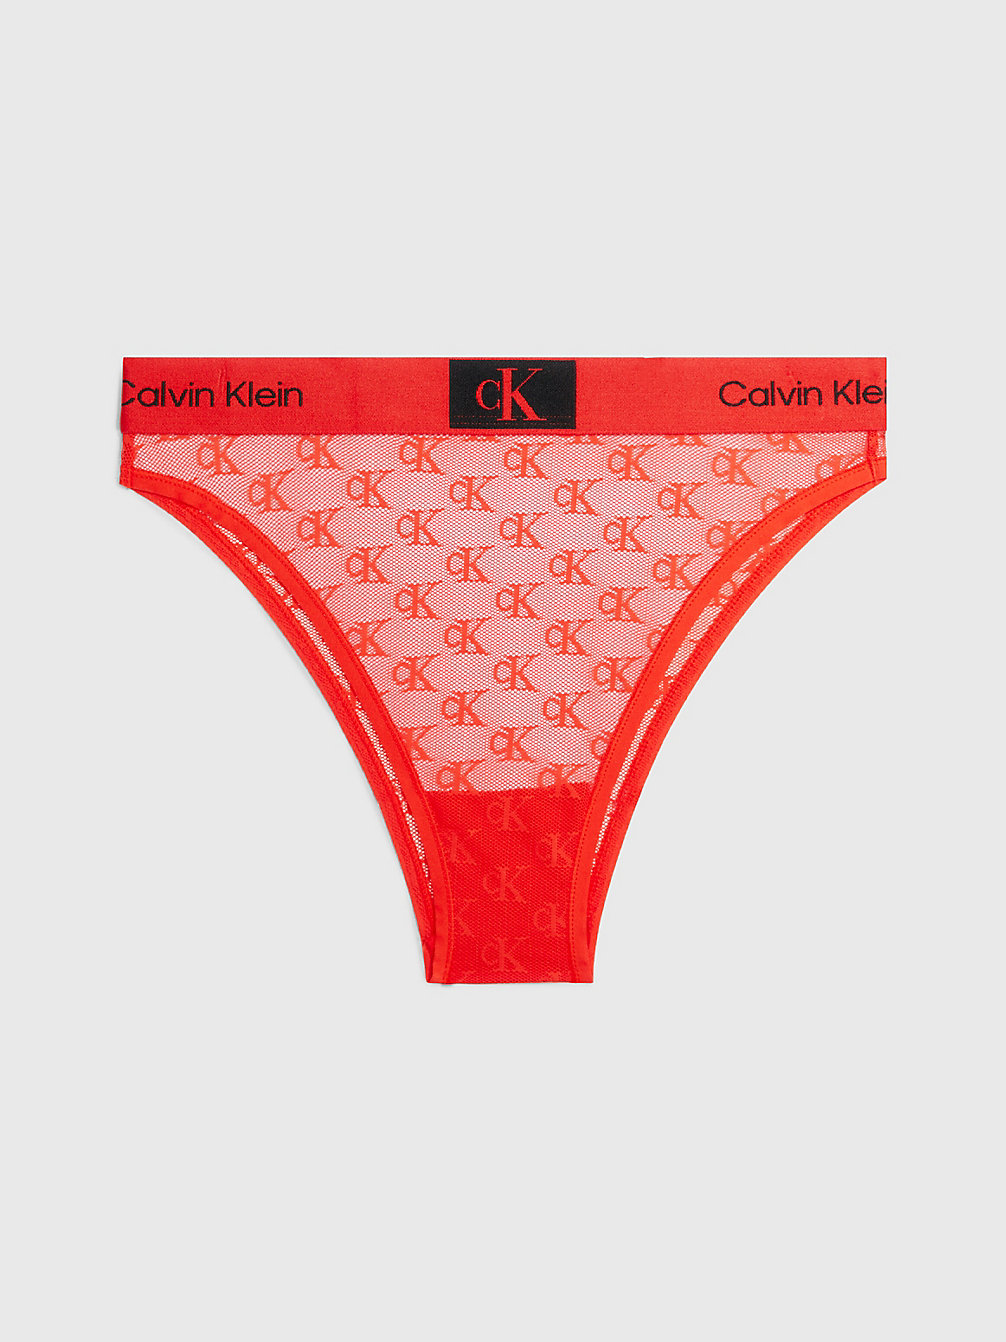 HAZARD Lace Brazilian Briefs - Ck96 undefined women Calvin Klein